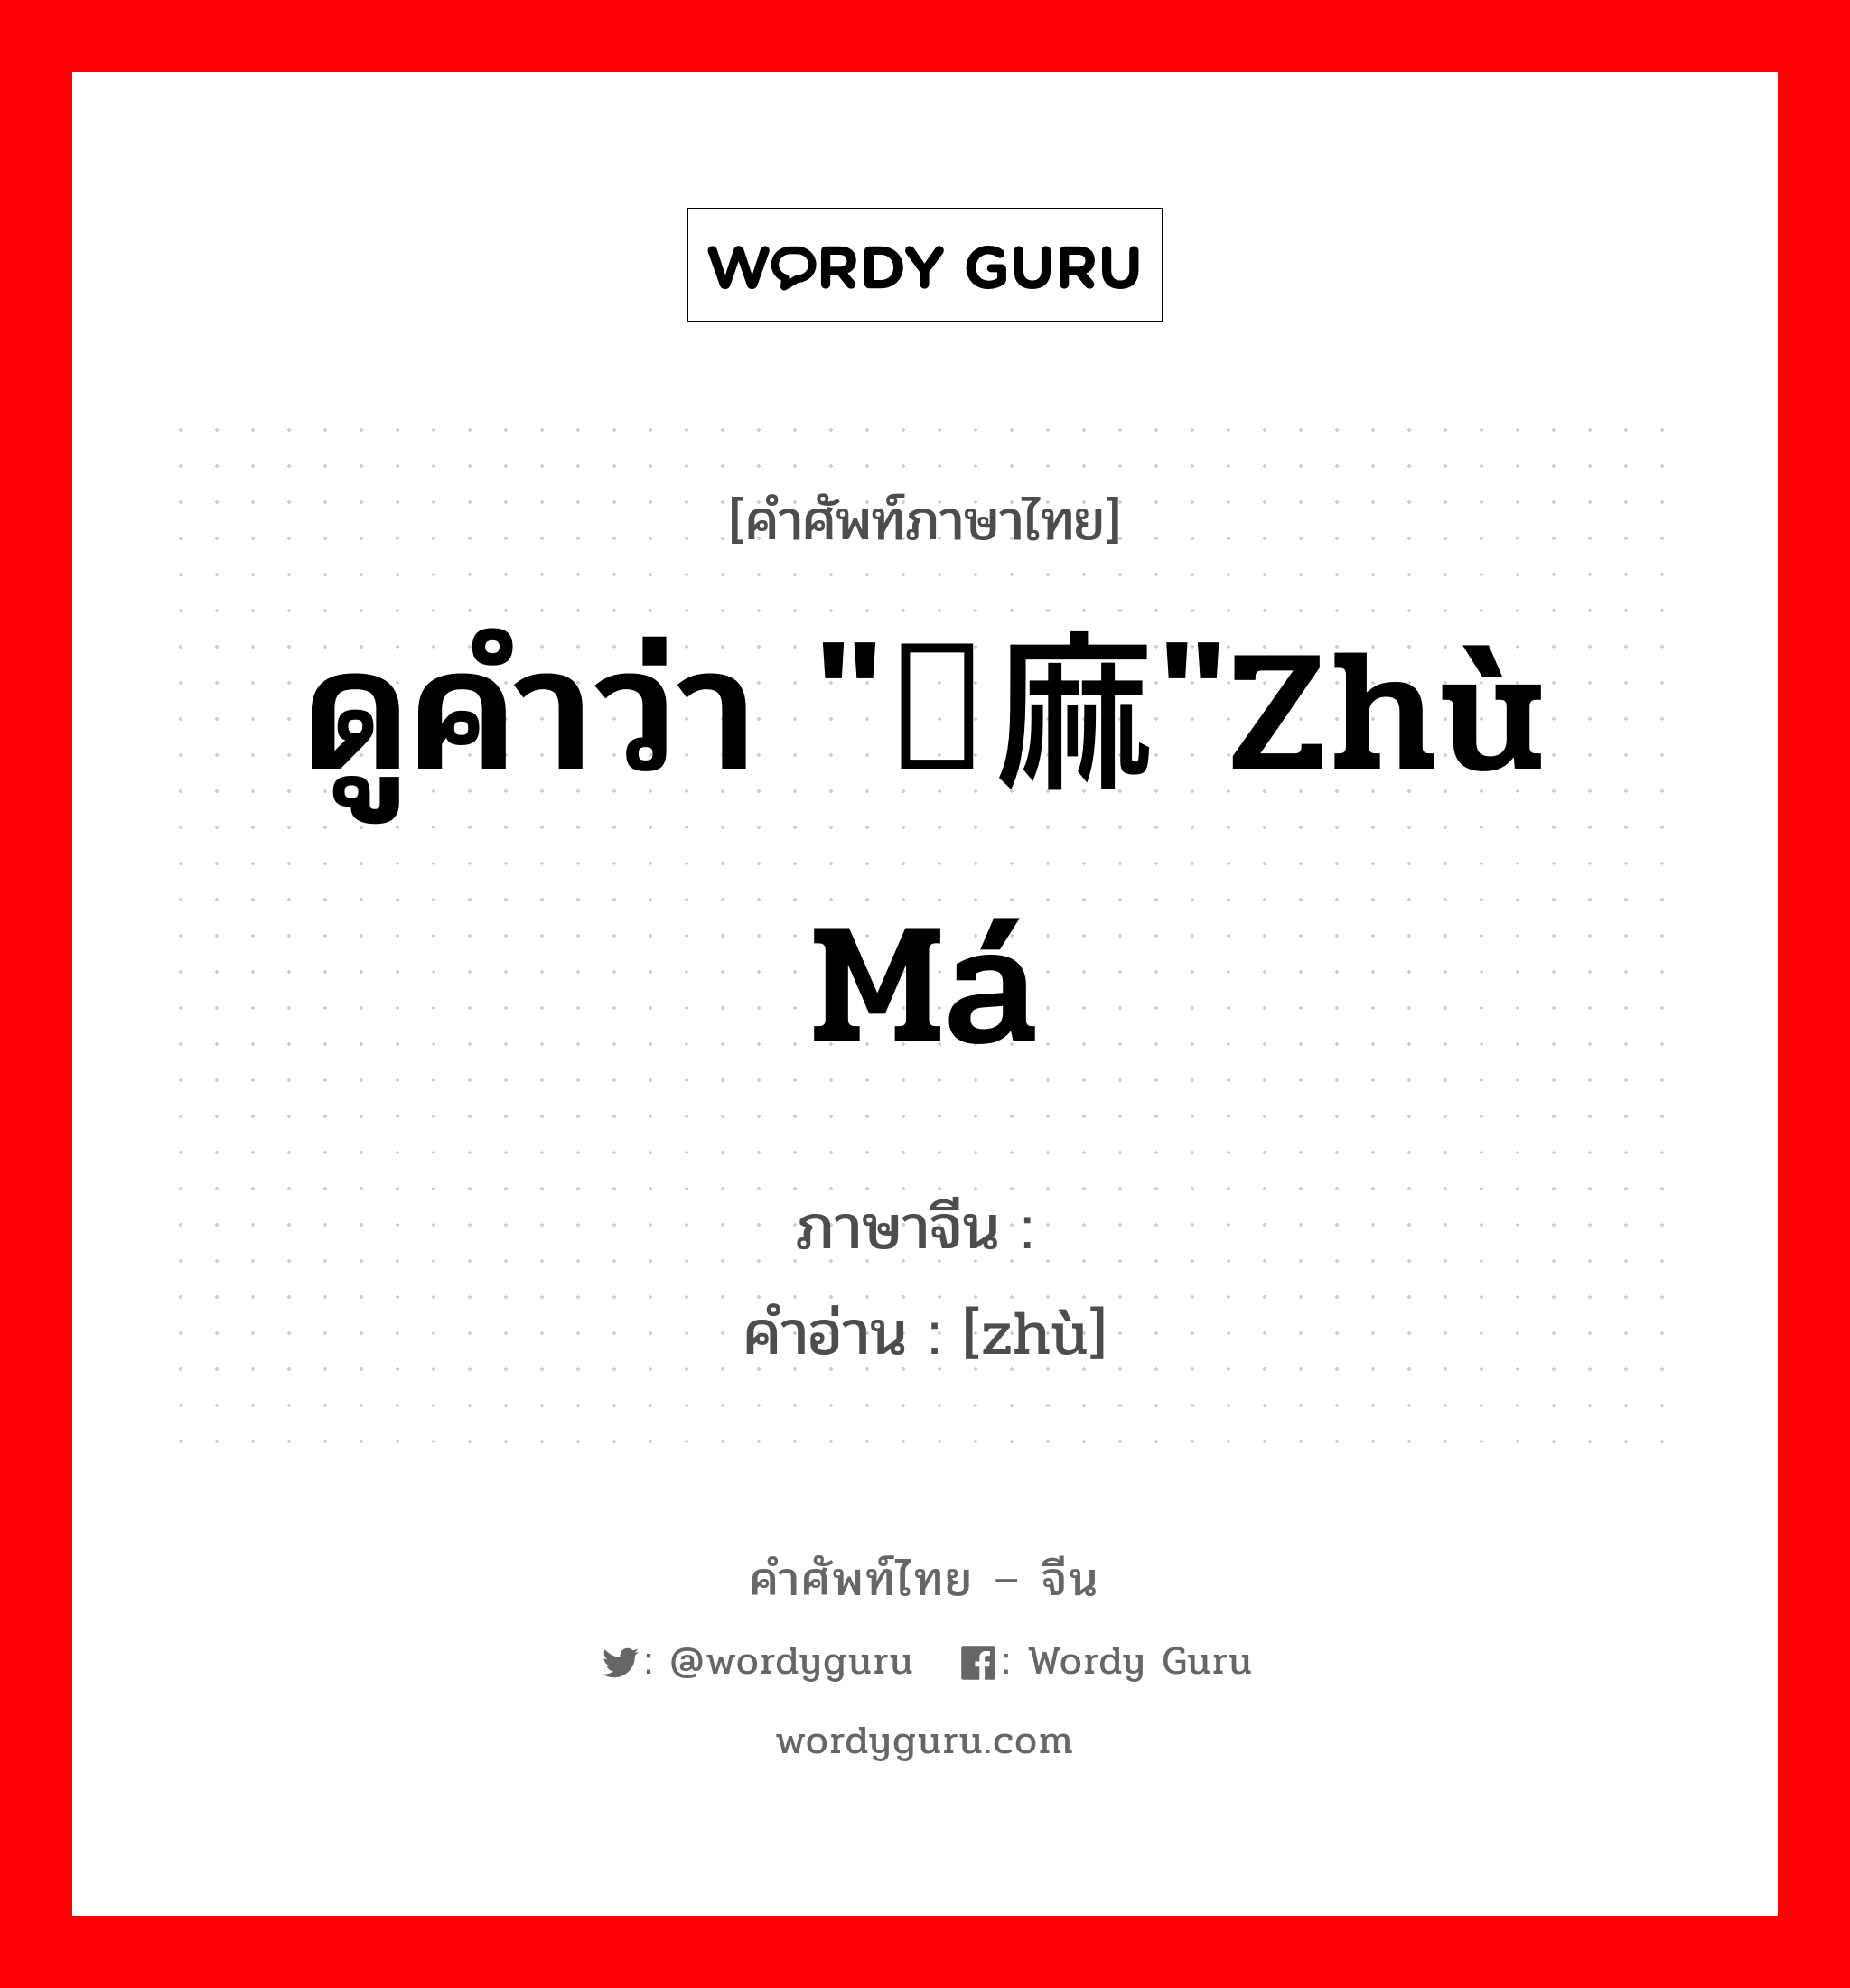 ดูคำว่า "苎麻"zhù má ภาษาจีนคืออะไร, คำศัพท์ภาษาไทย - จีน ดูคำว่า "苎麻"zhù má ภาษาจีน 苎 คำอ่าน [zhù]